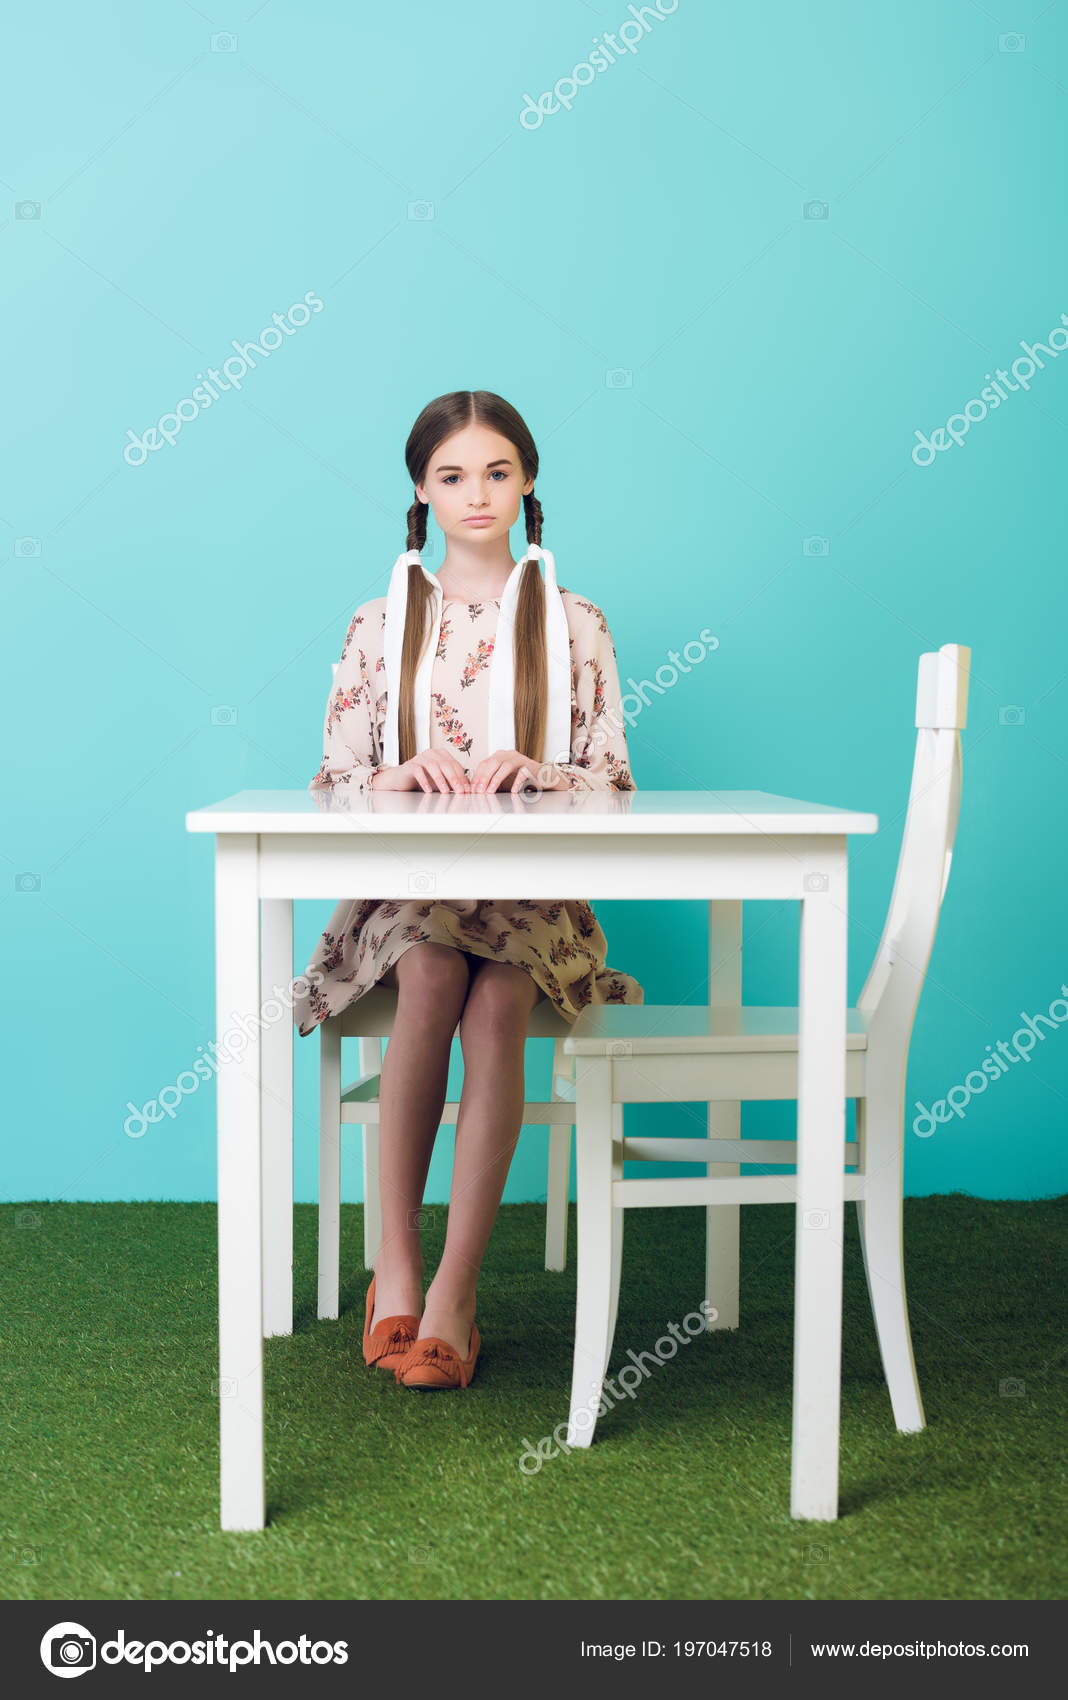 Um Jovem De Máscara De Unicórnio Está Sentado Em Uma Cadeira Na